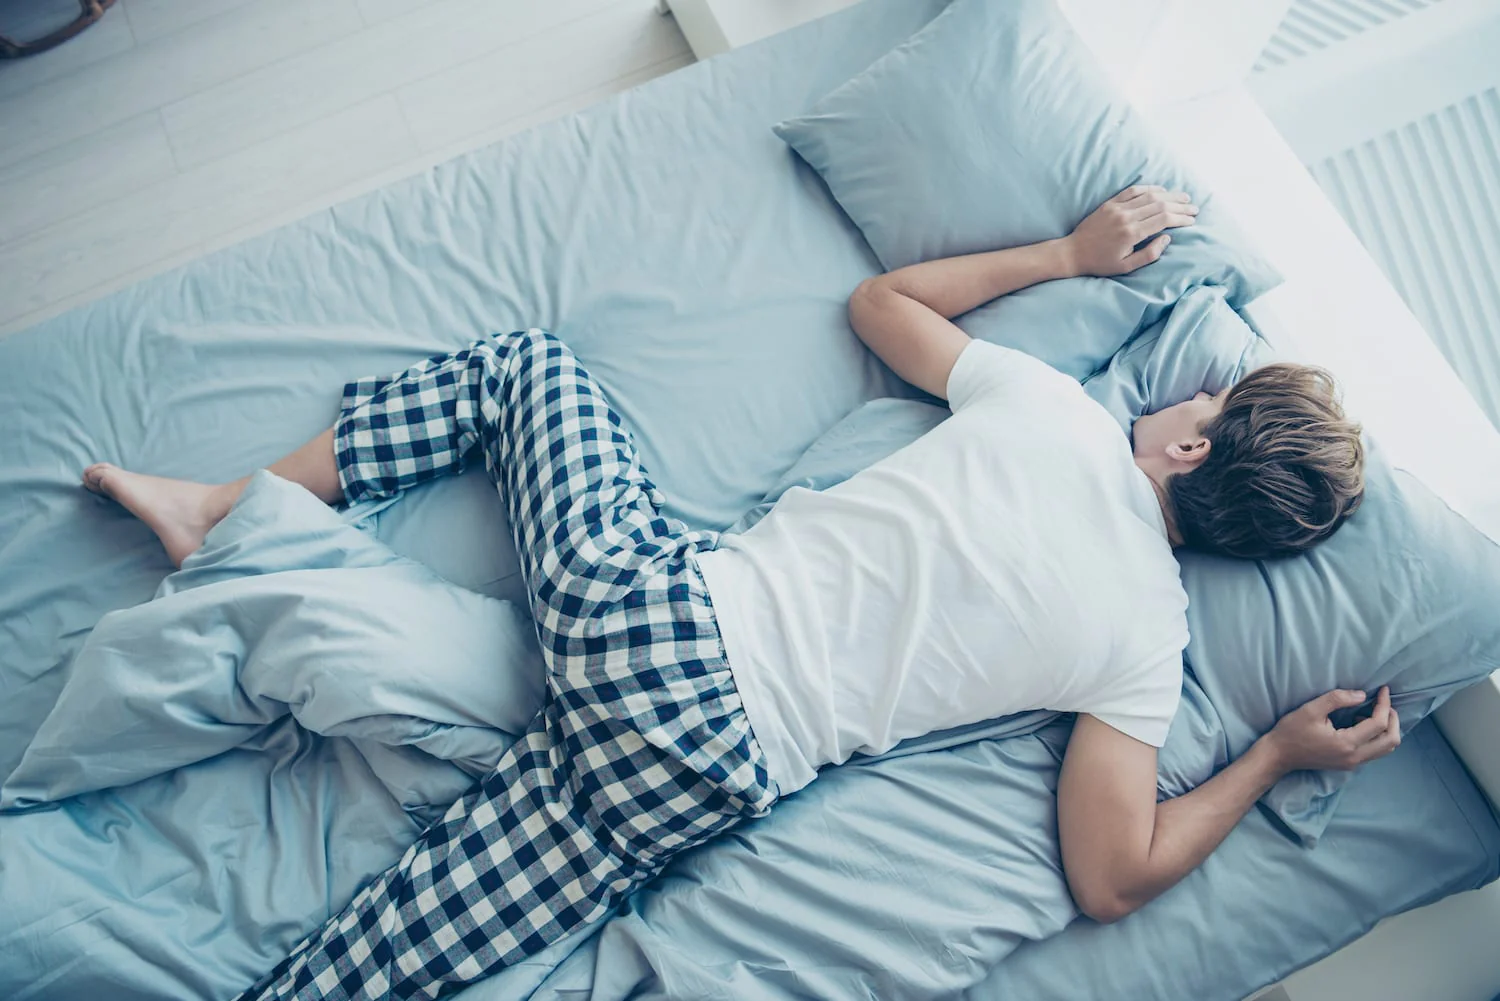 Πόνος στη μέση: Δείτε ποιες είναι οι έξι θέσεις ύπνου που θα σας ανακουφίσουν